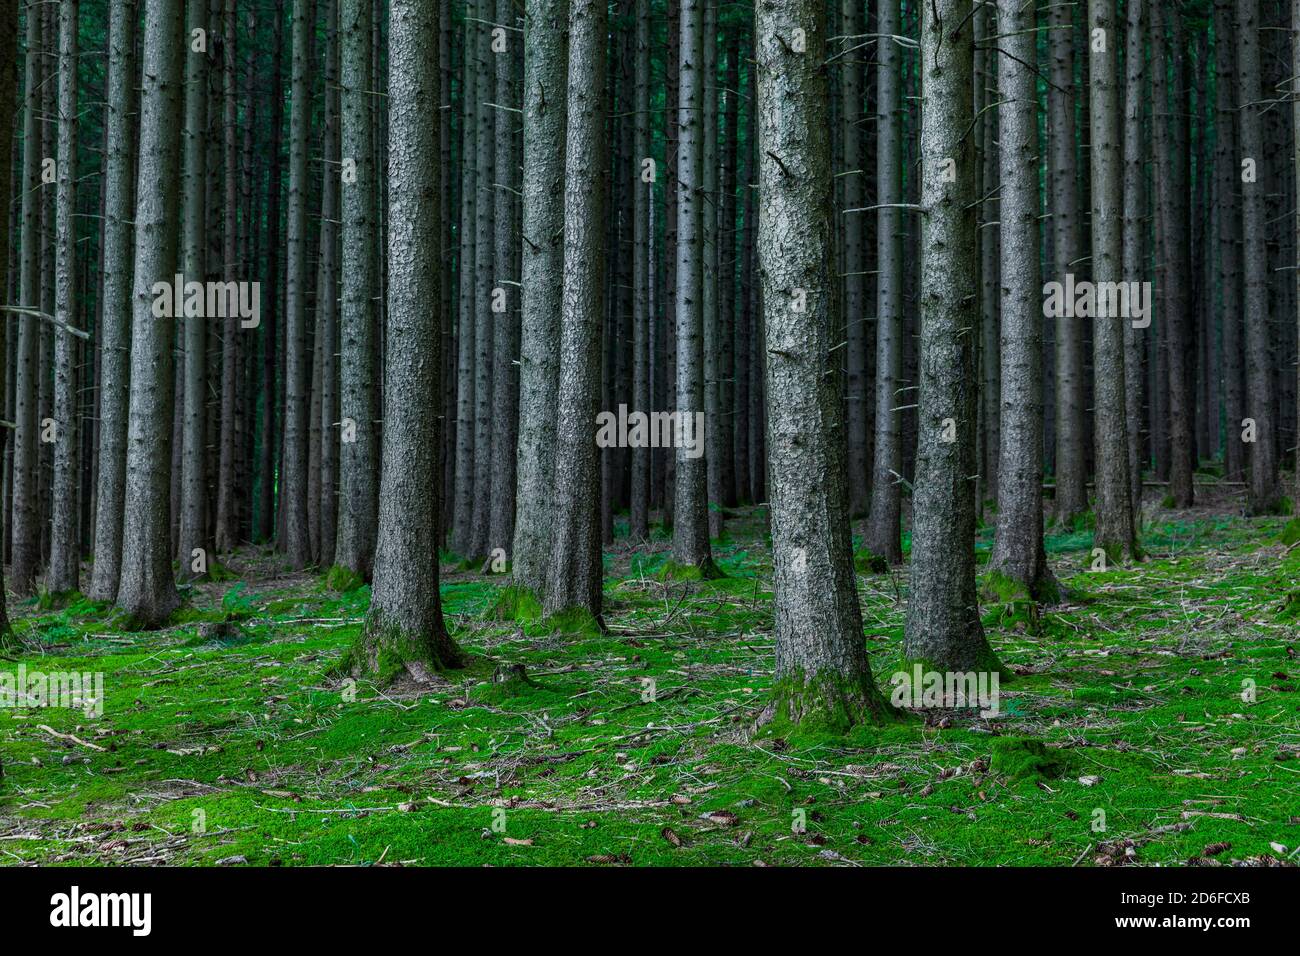 Troncs de sapins en forêt de conifères avec plancher forestier Banque D'Images